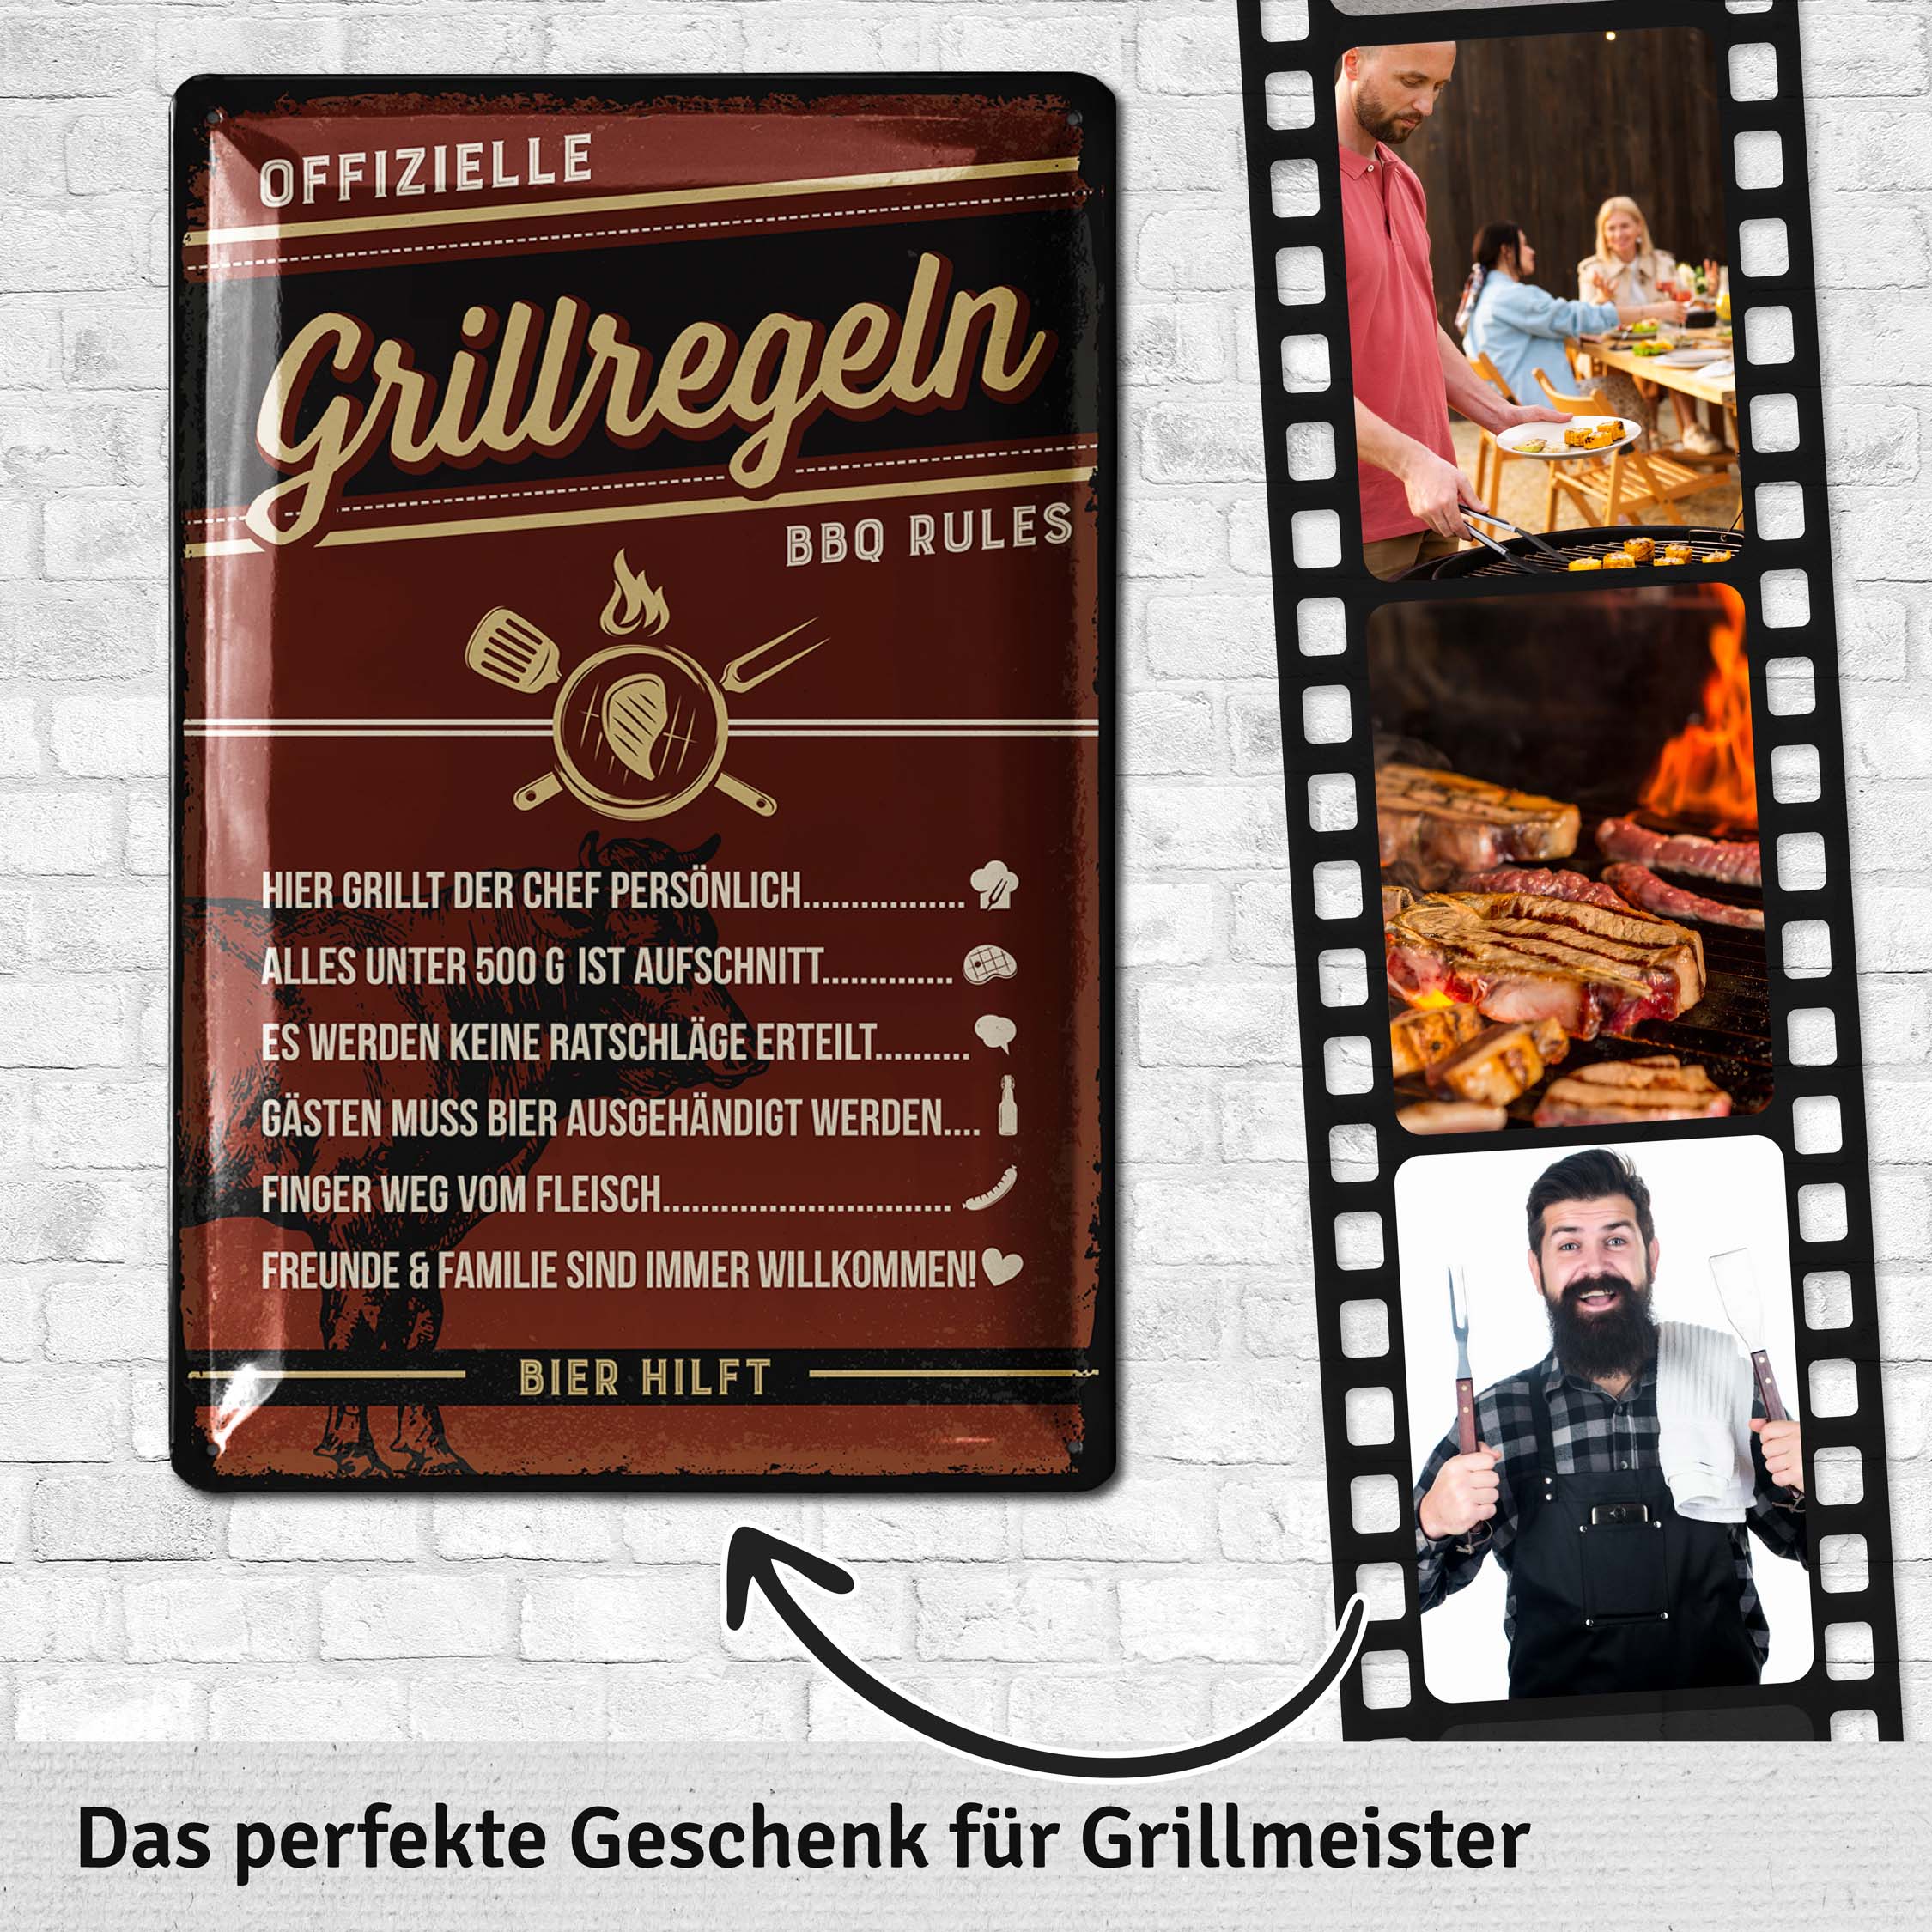 Retro Blechschilder Grillen - GRILLREGELN